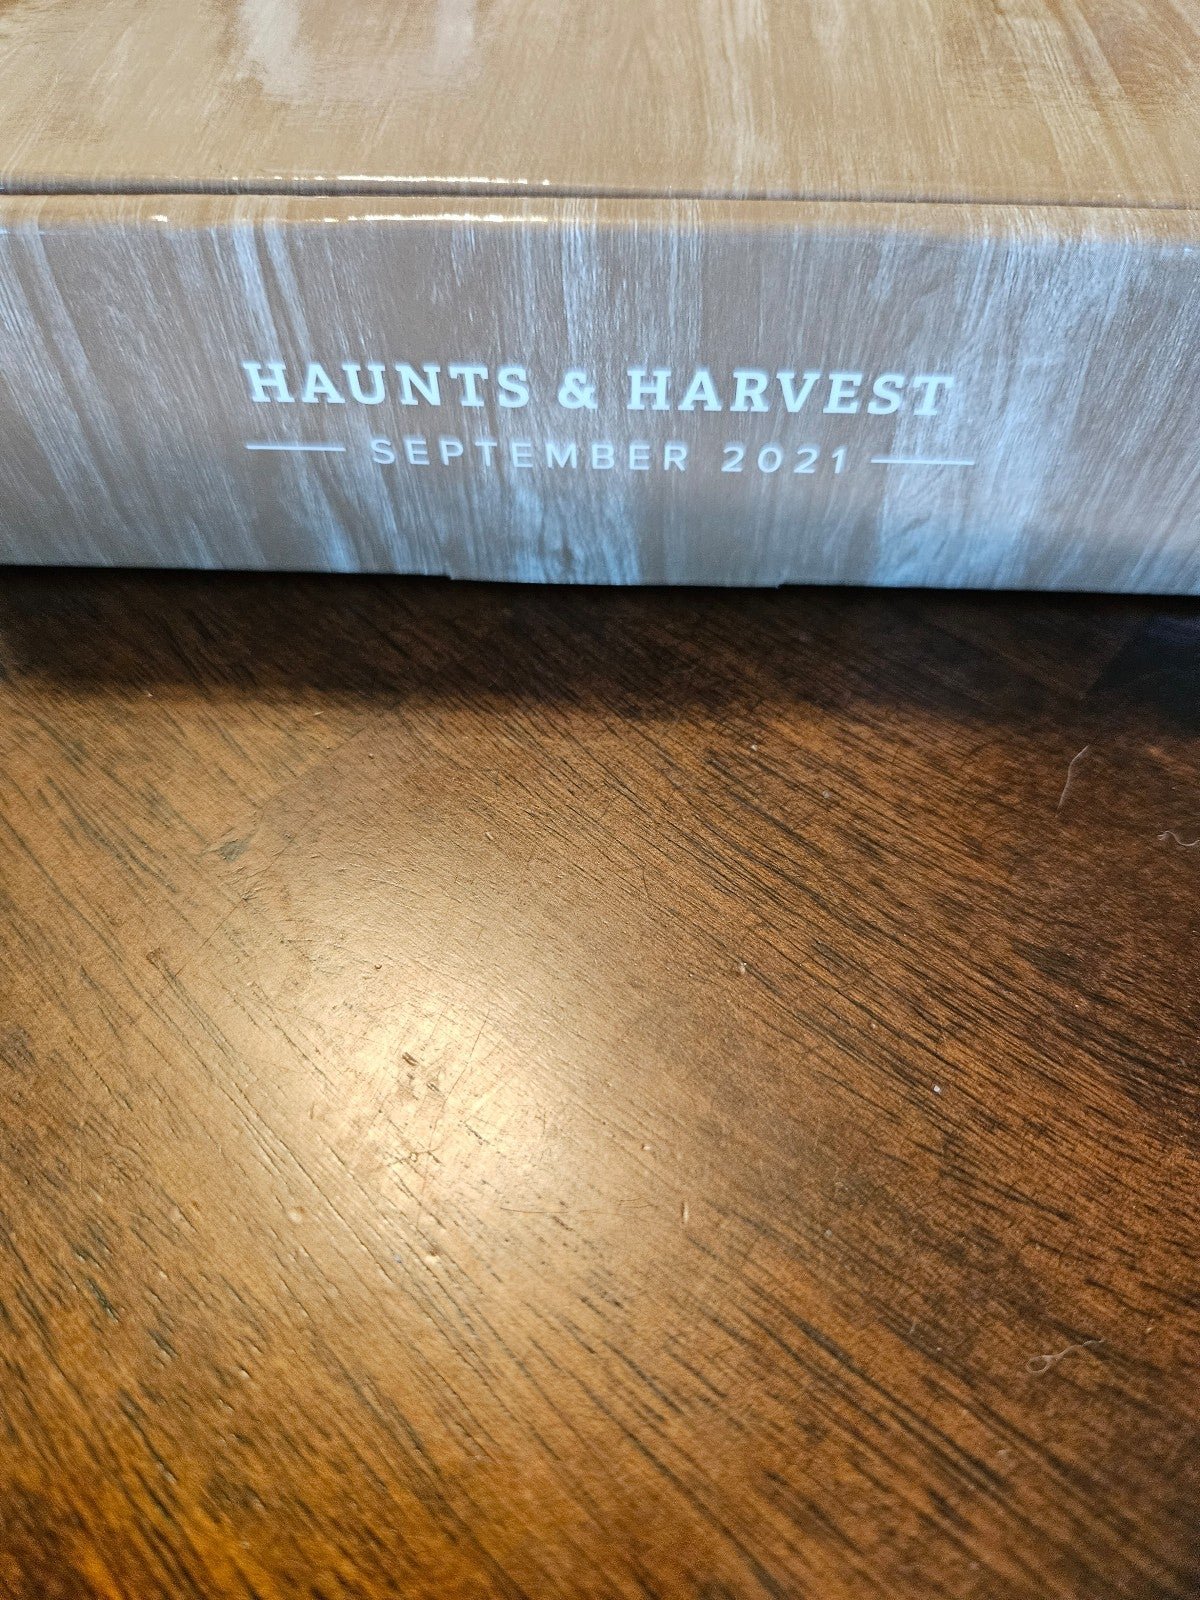 Sept 2021 Haunts & Harvest paper pumpkin Cho6jxLI9